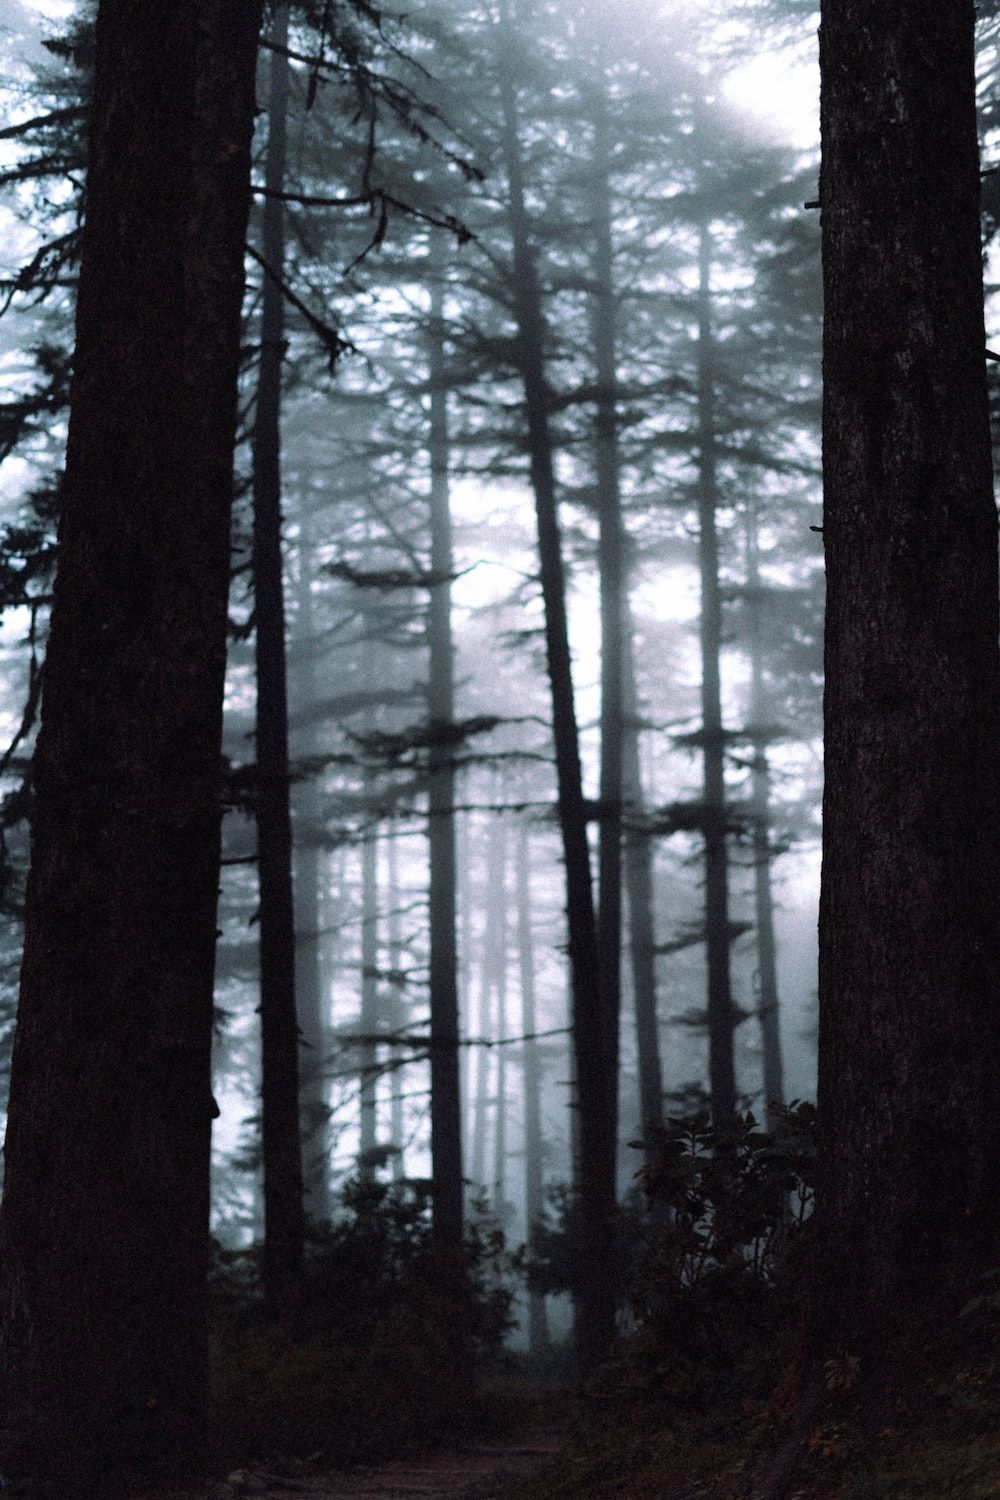  Windows Pfad Hintergrundbild 1000x1500. Foto zum Thema Ein Pfad durch einen Wald mit hohen Bäumen